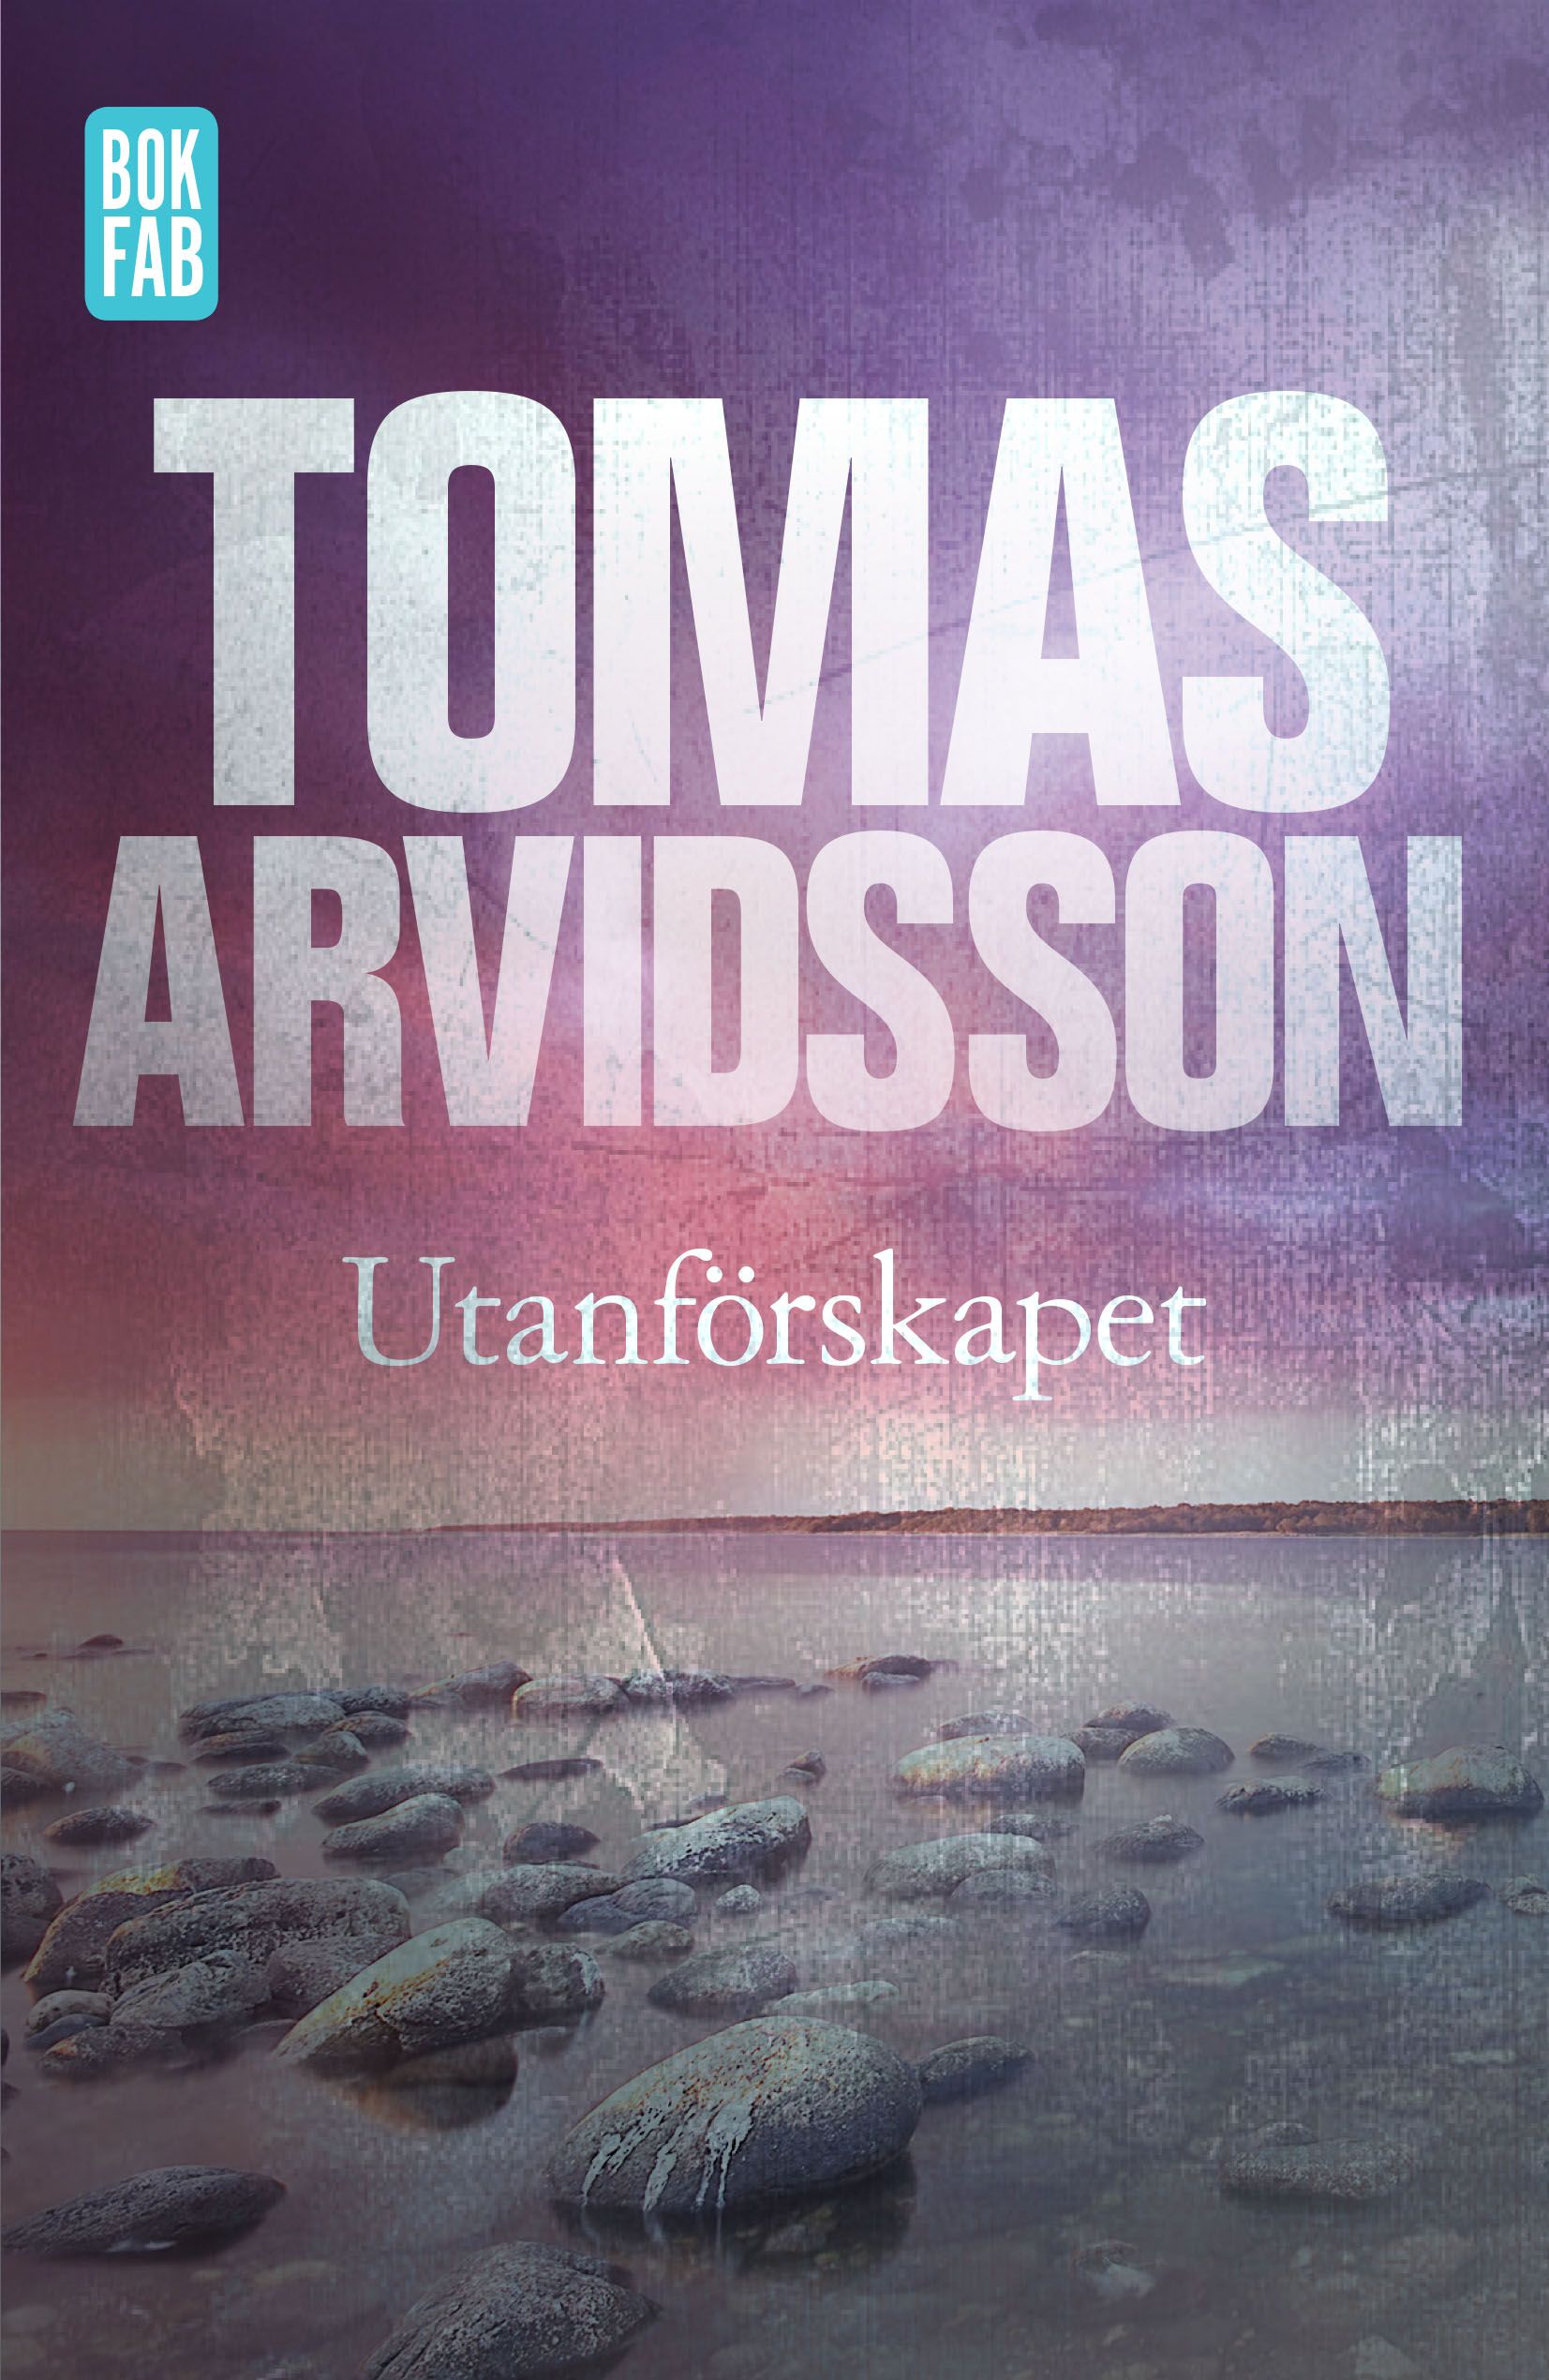 Utanförskapet, eBook by Tomas Arvidsson